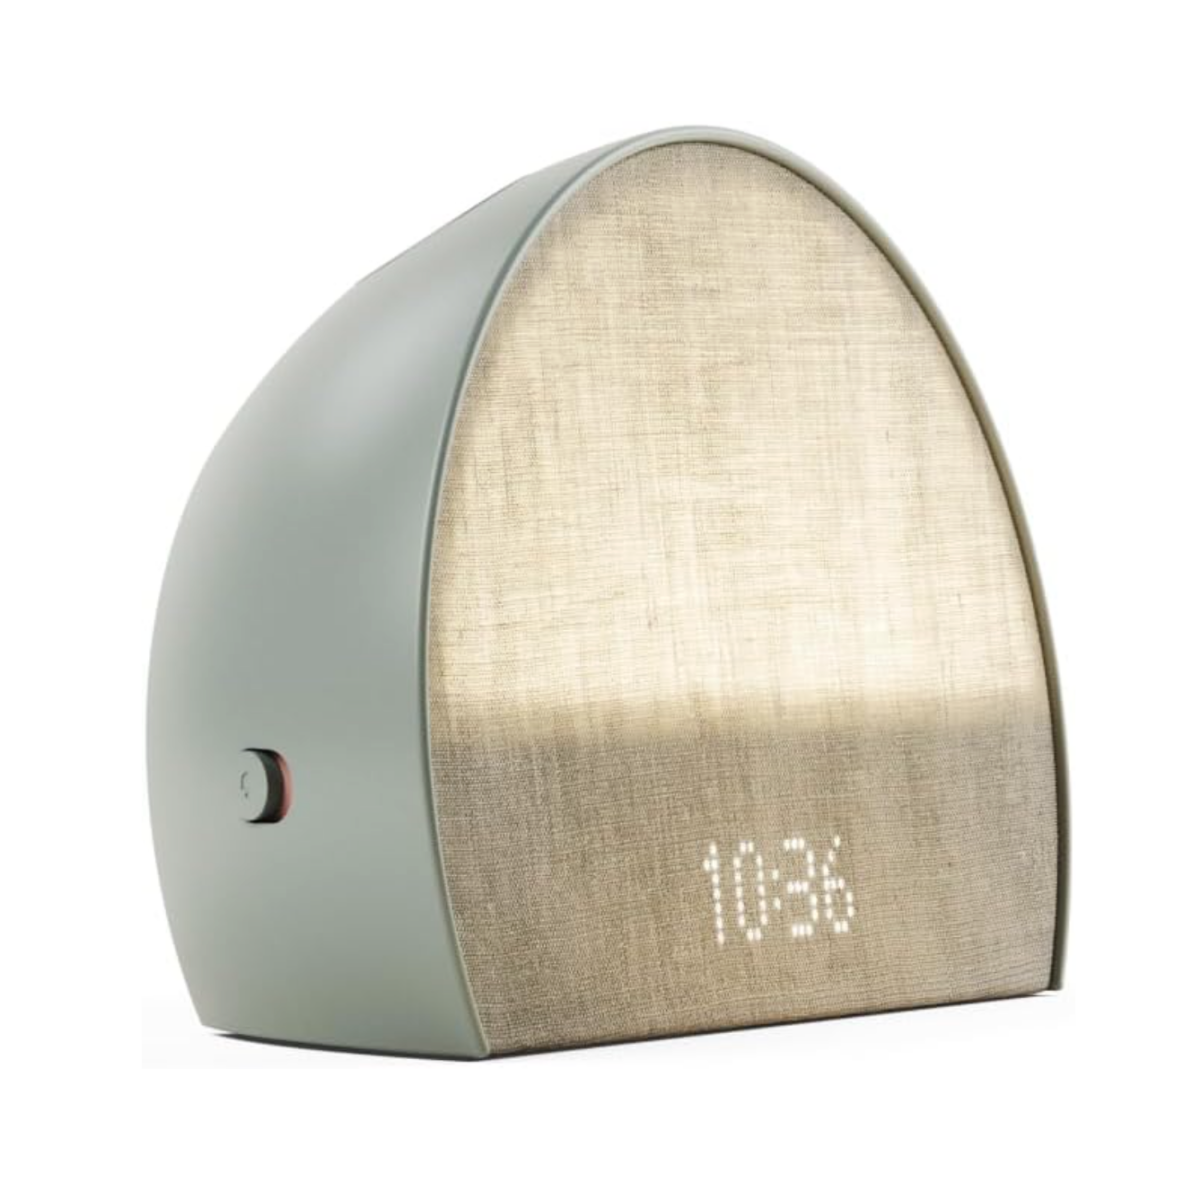 A Hatch Restore 2 smart alarm clock